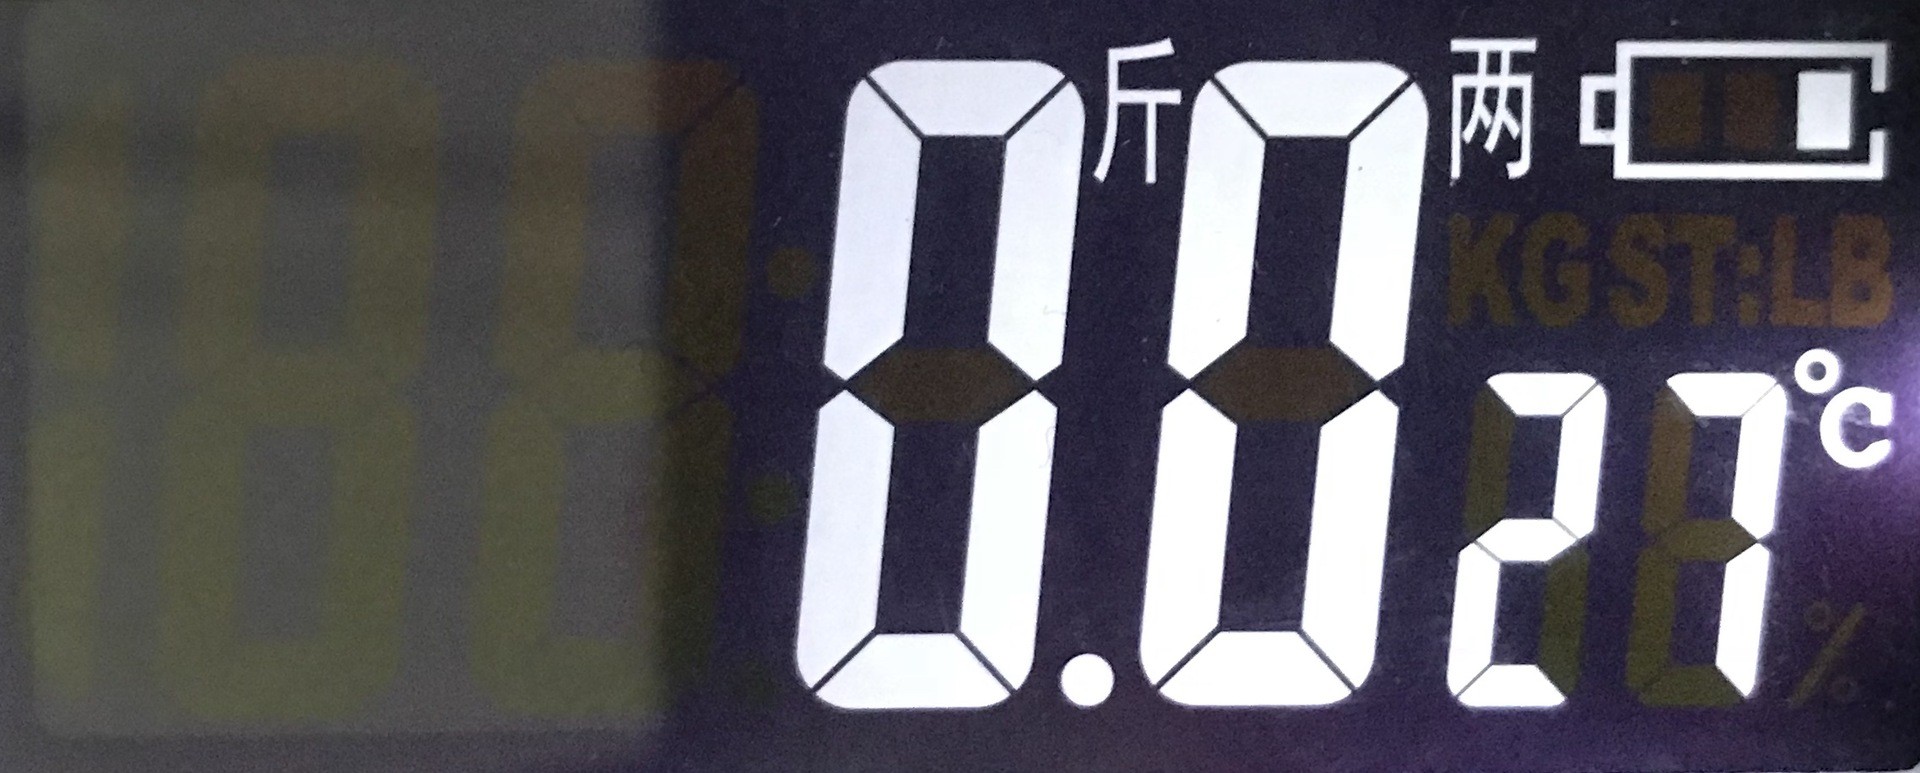 液晶大屏家用体重秤 背光显示电池容量、温度电子秤 新款健康秤详情图10